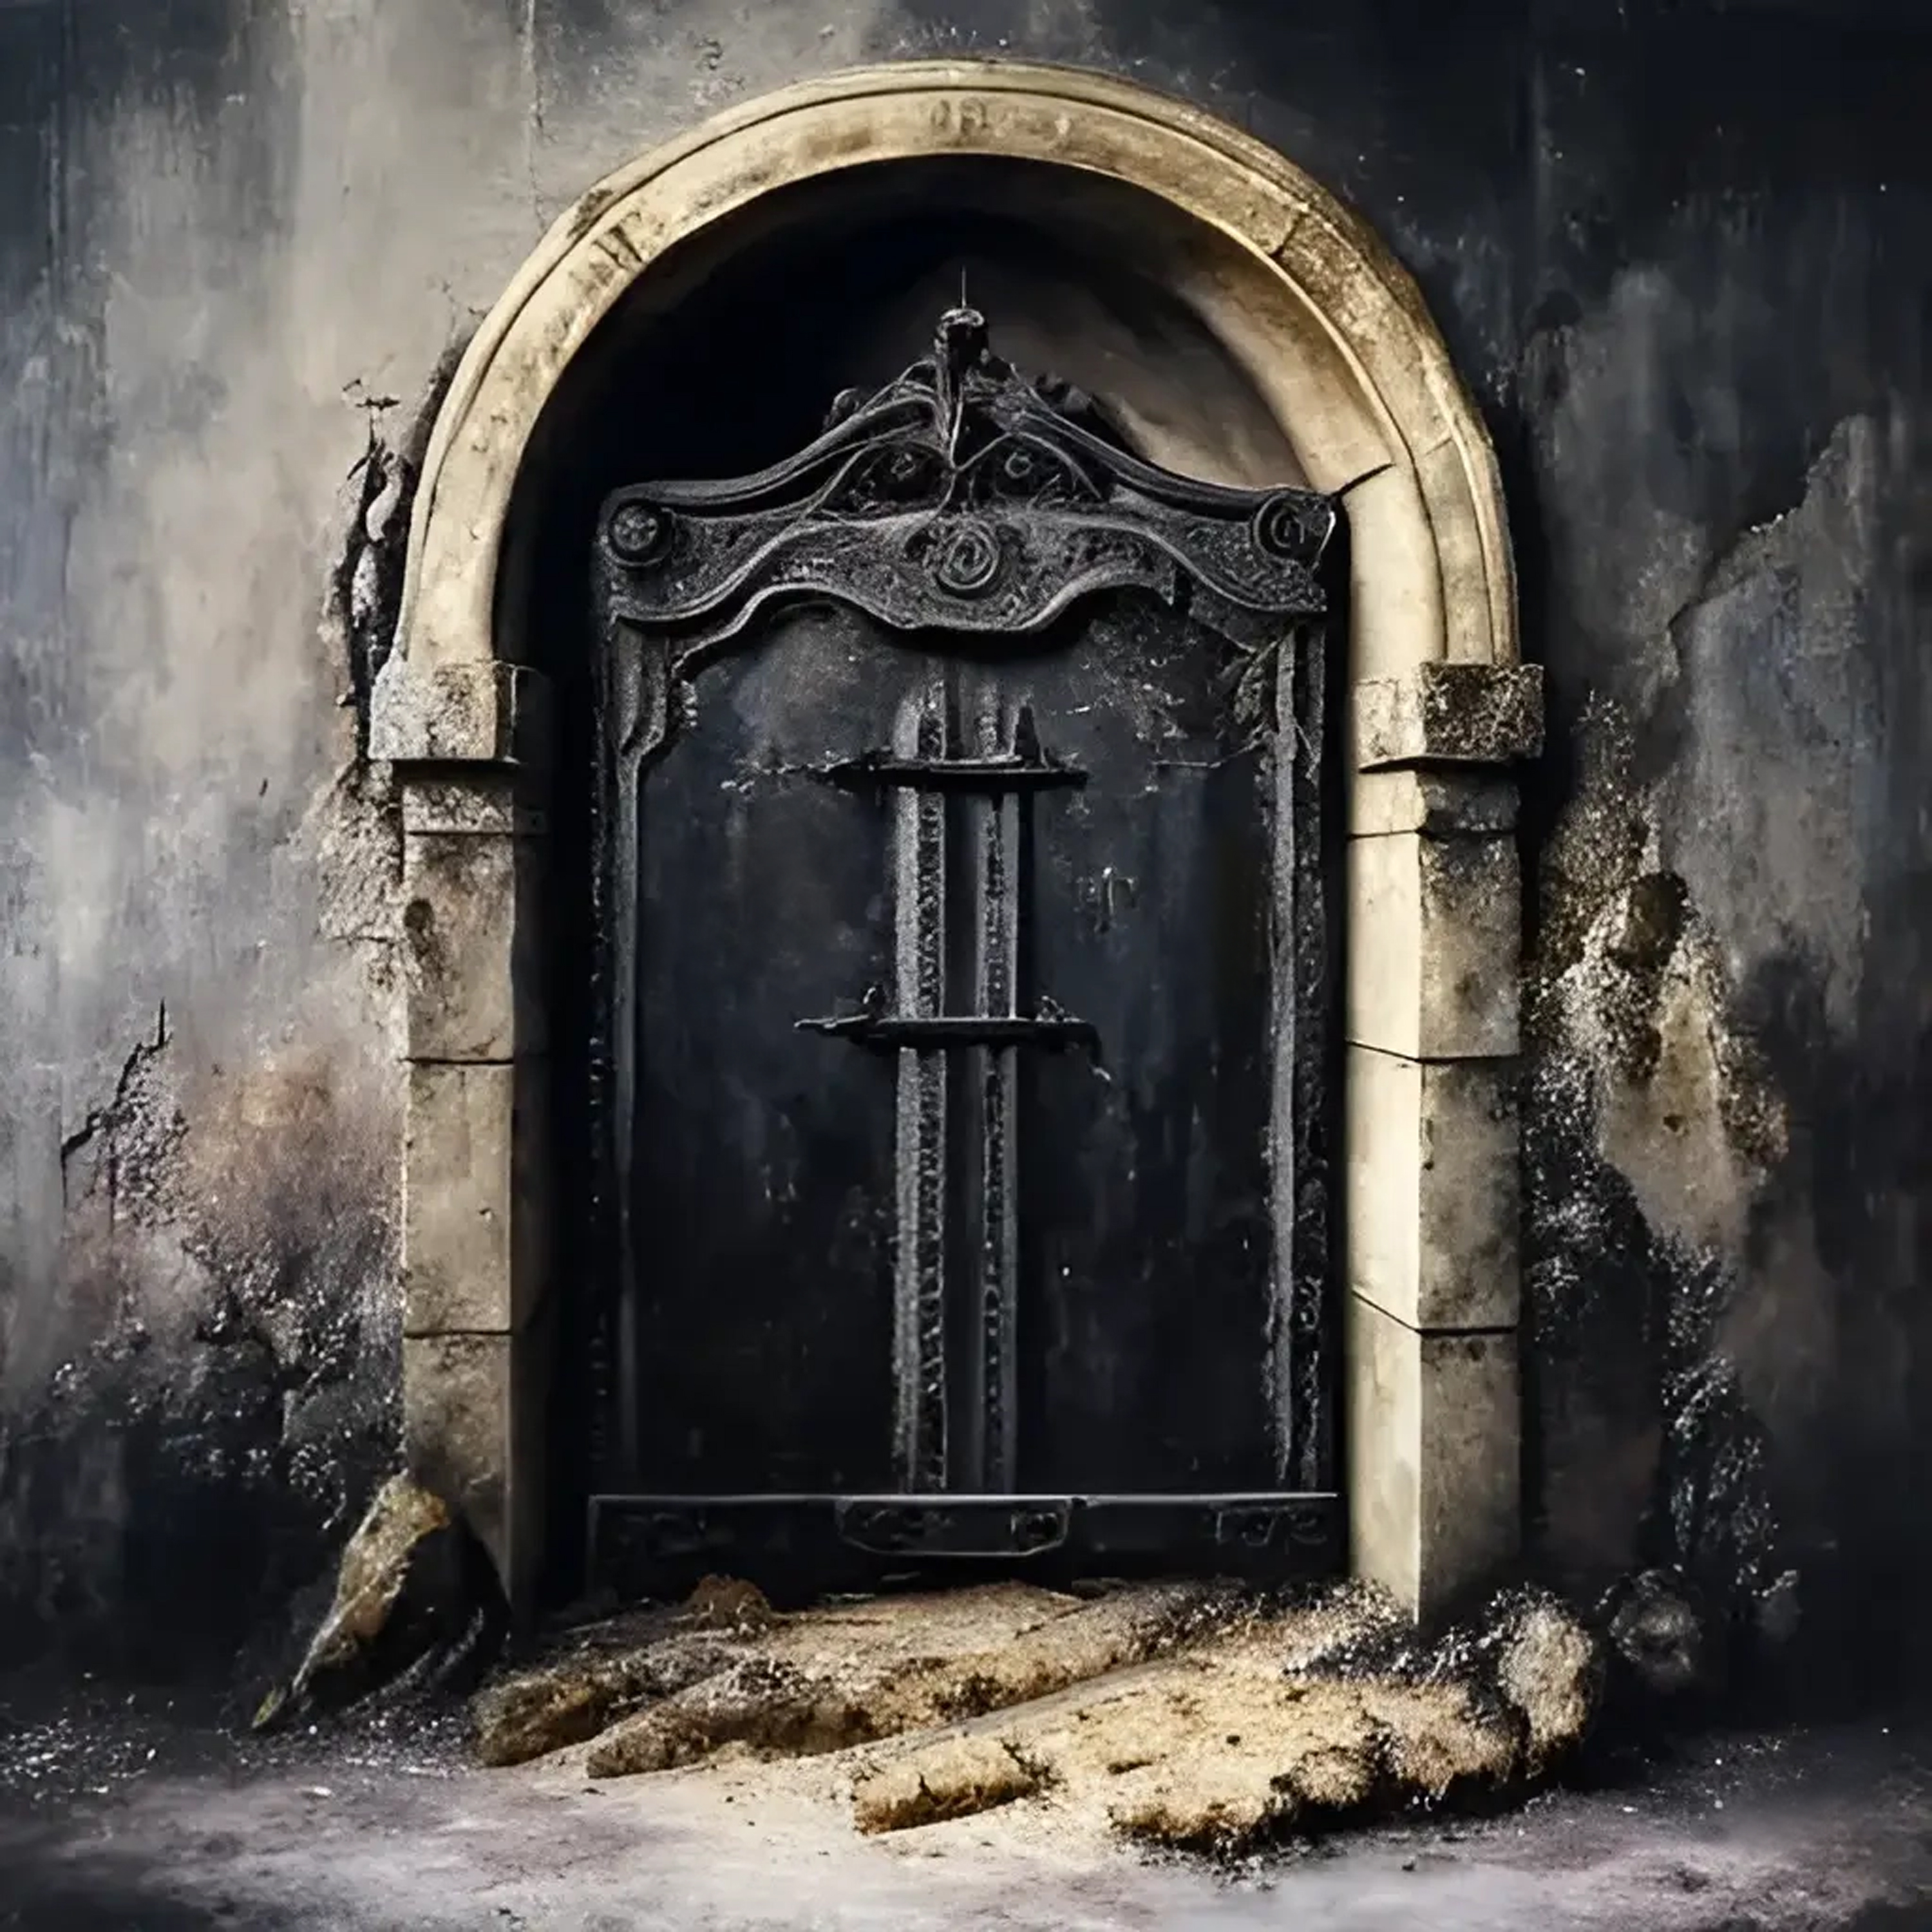 XVI - The door of XNLKX